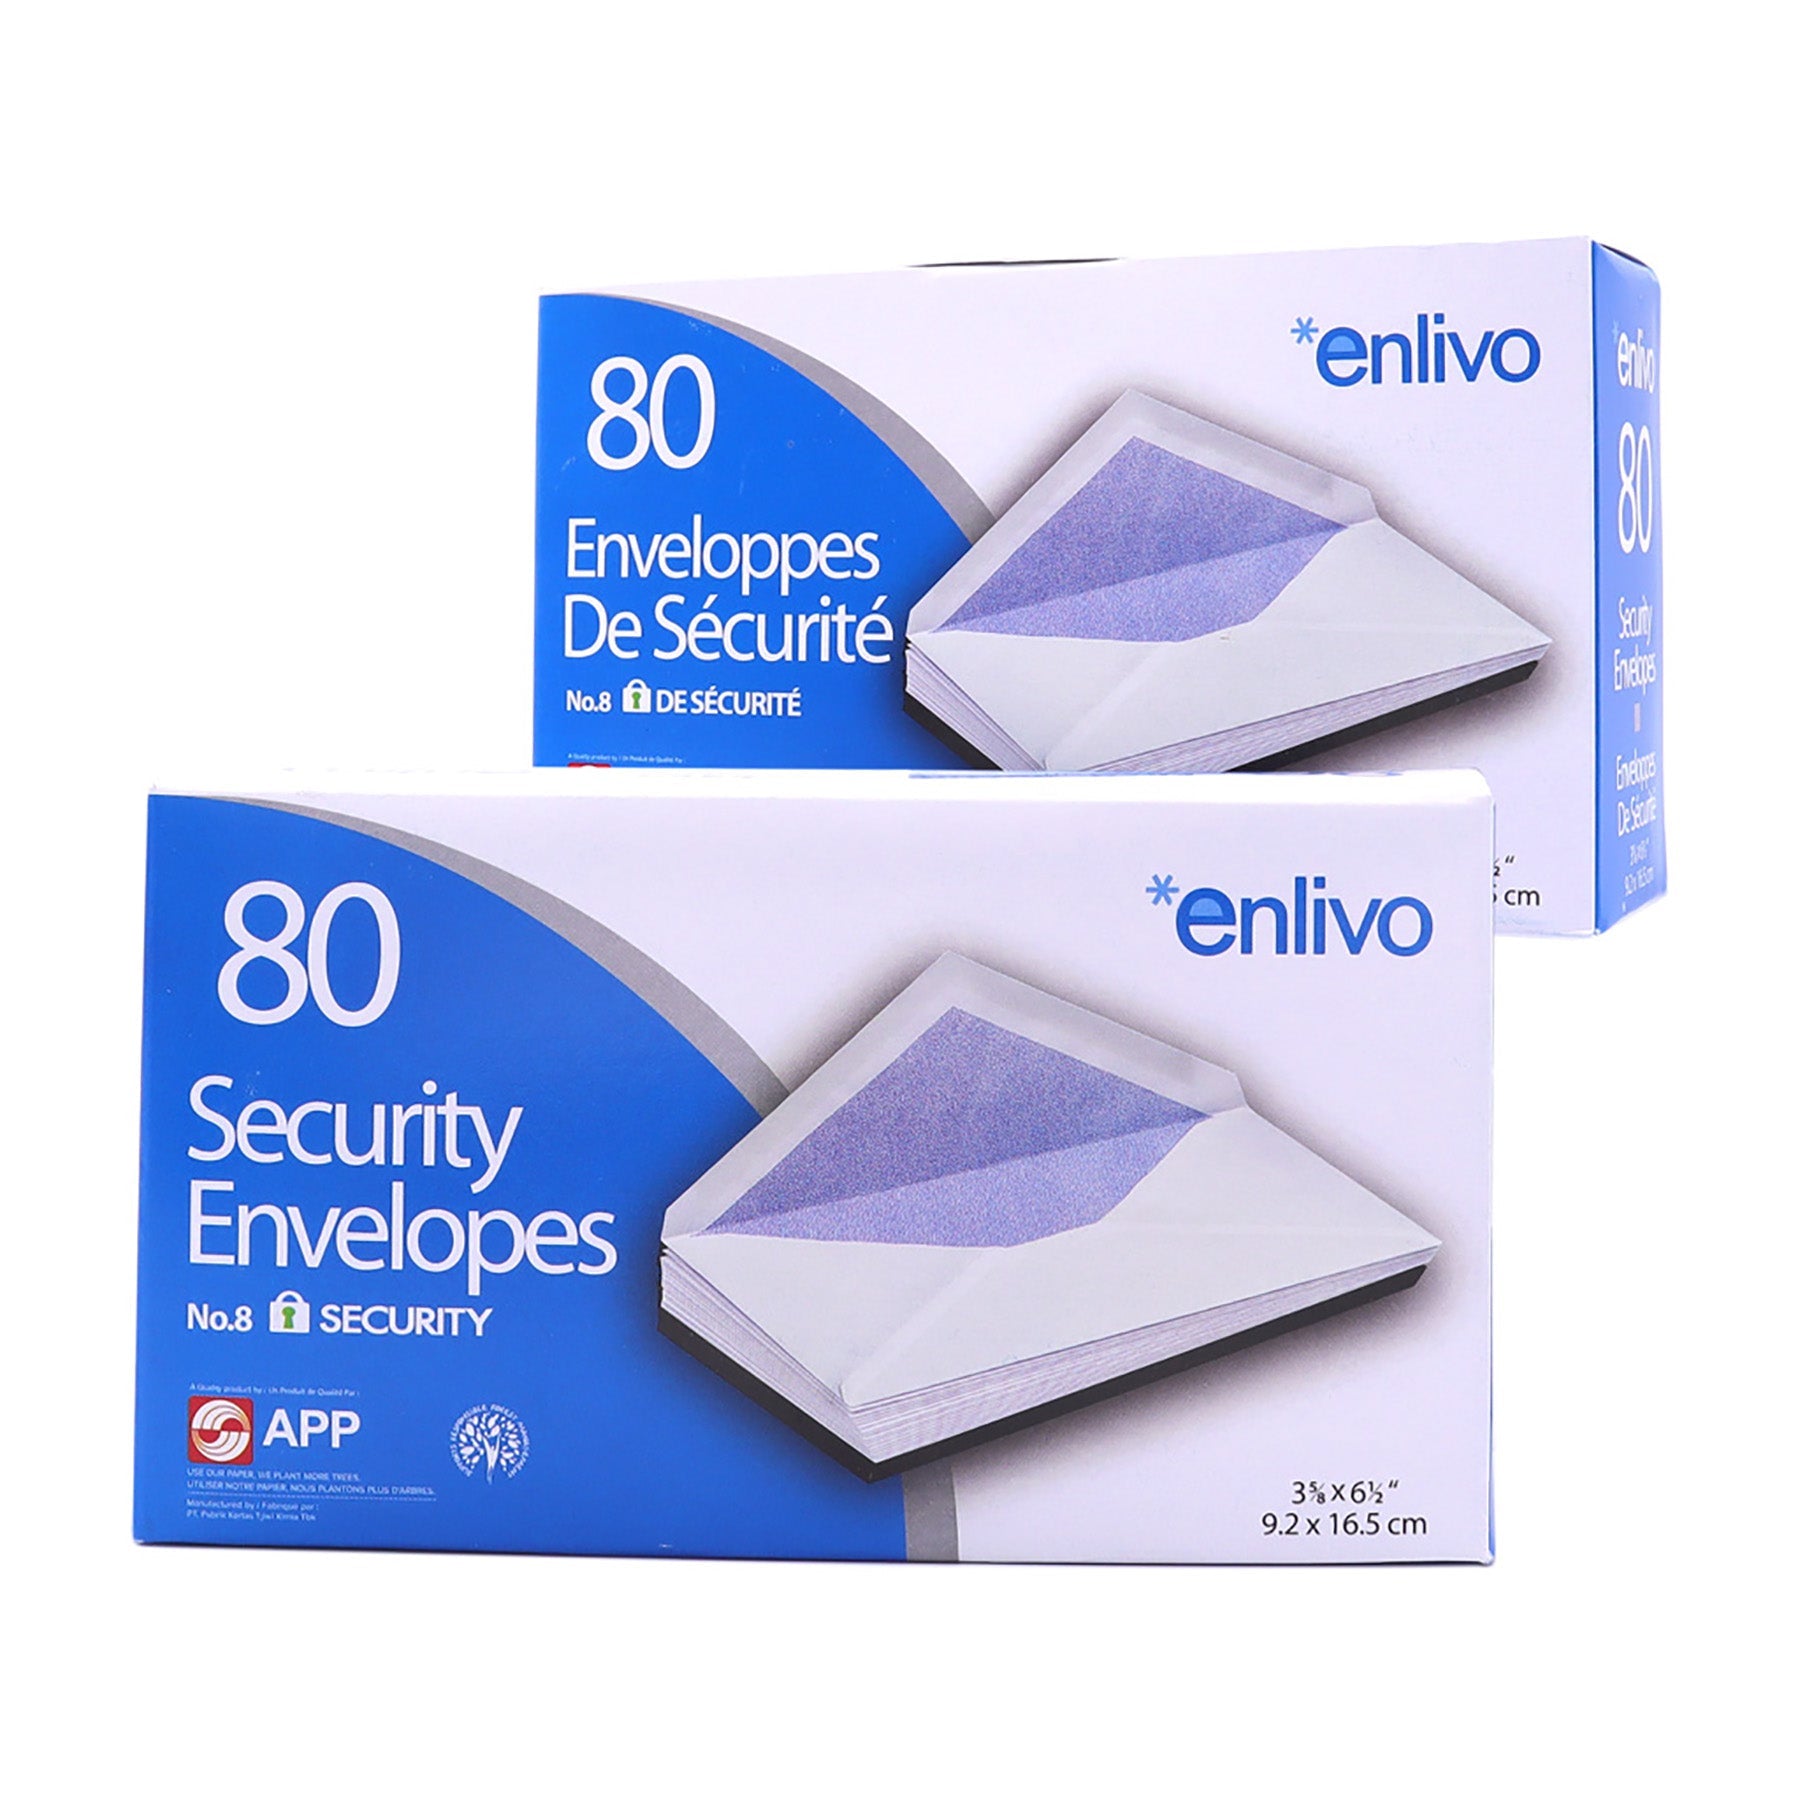 APP 80 Security Envelopes no 8 3.62x6.5in